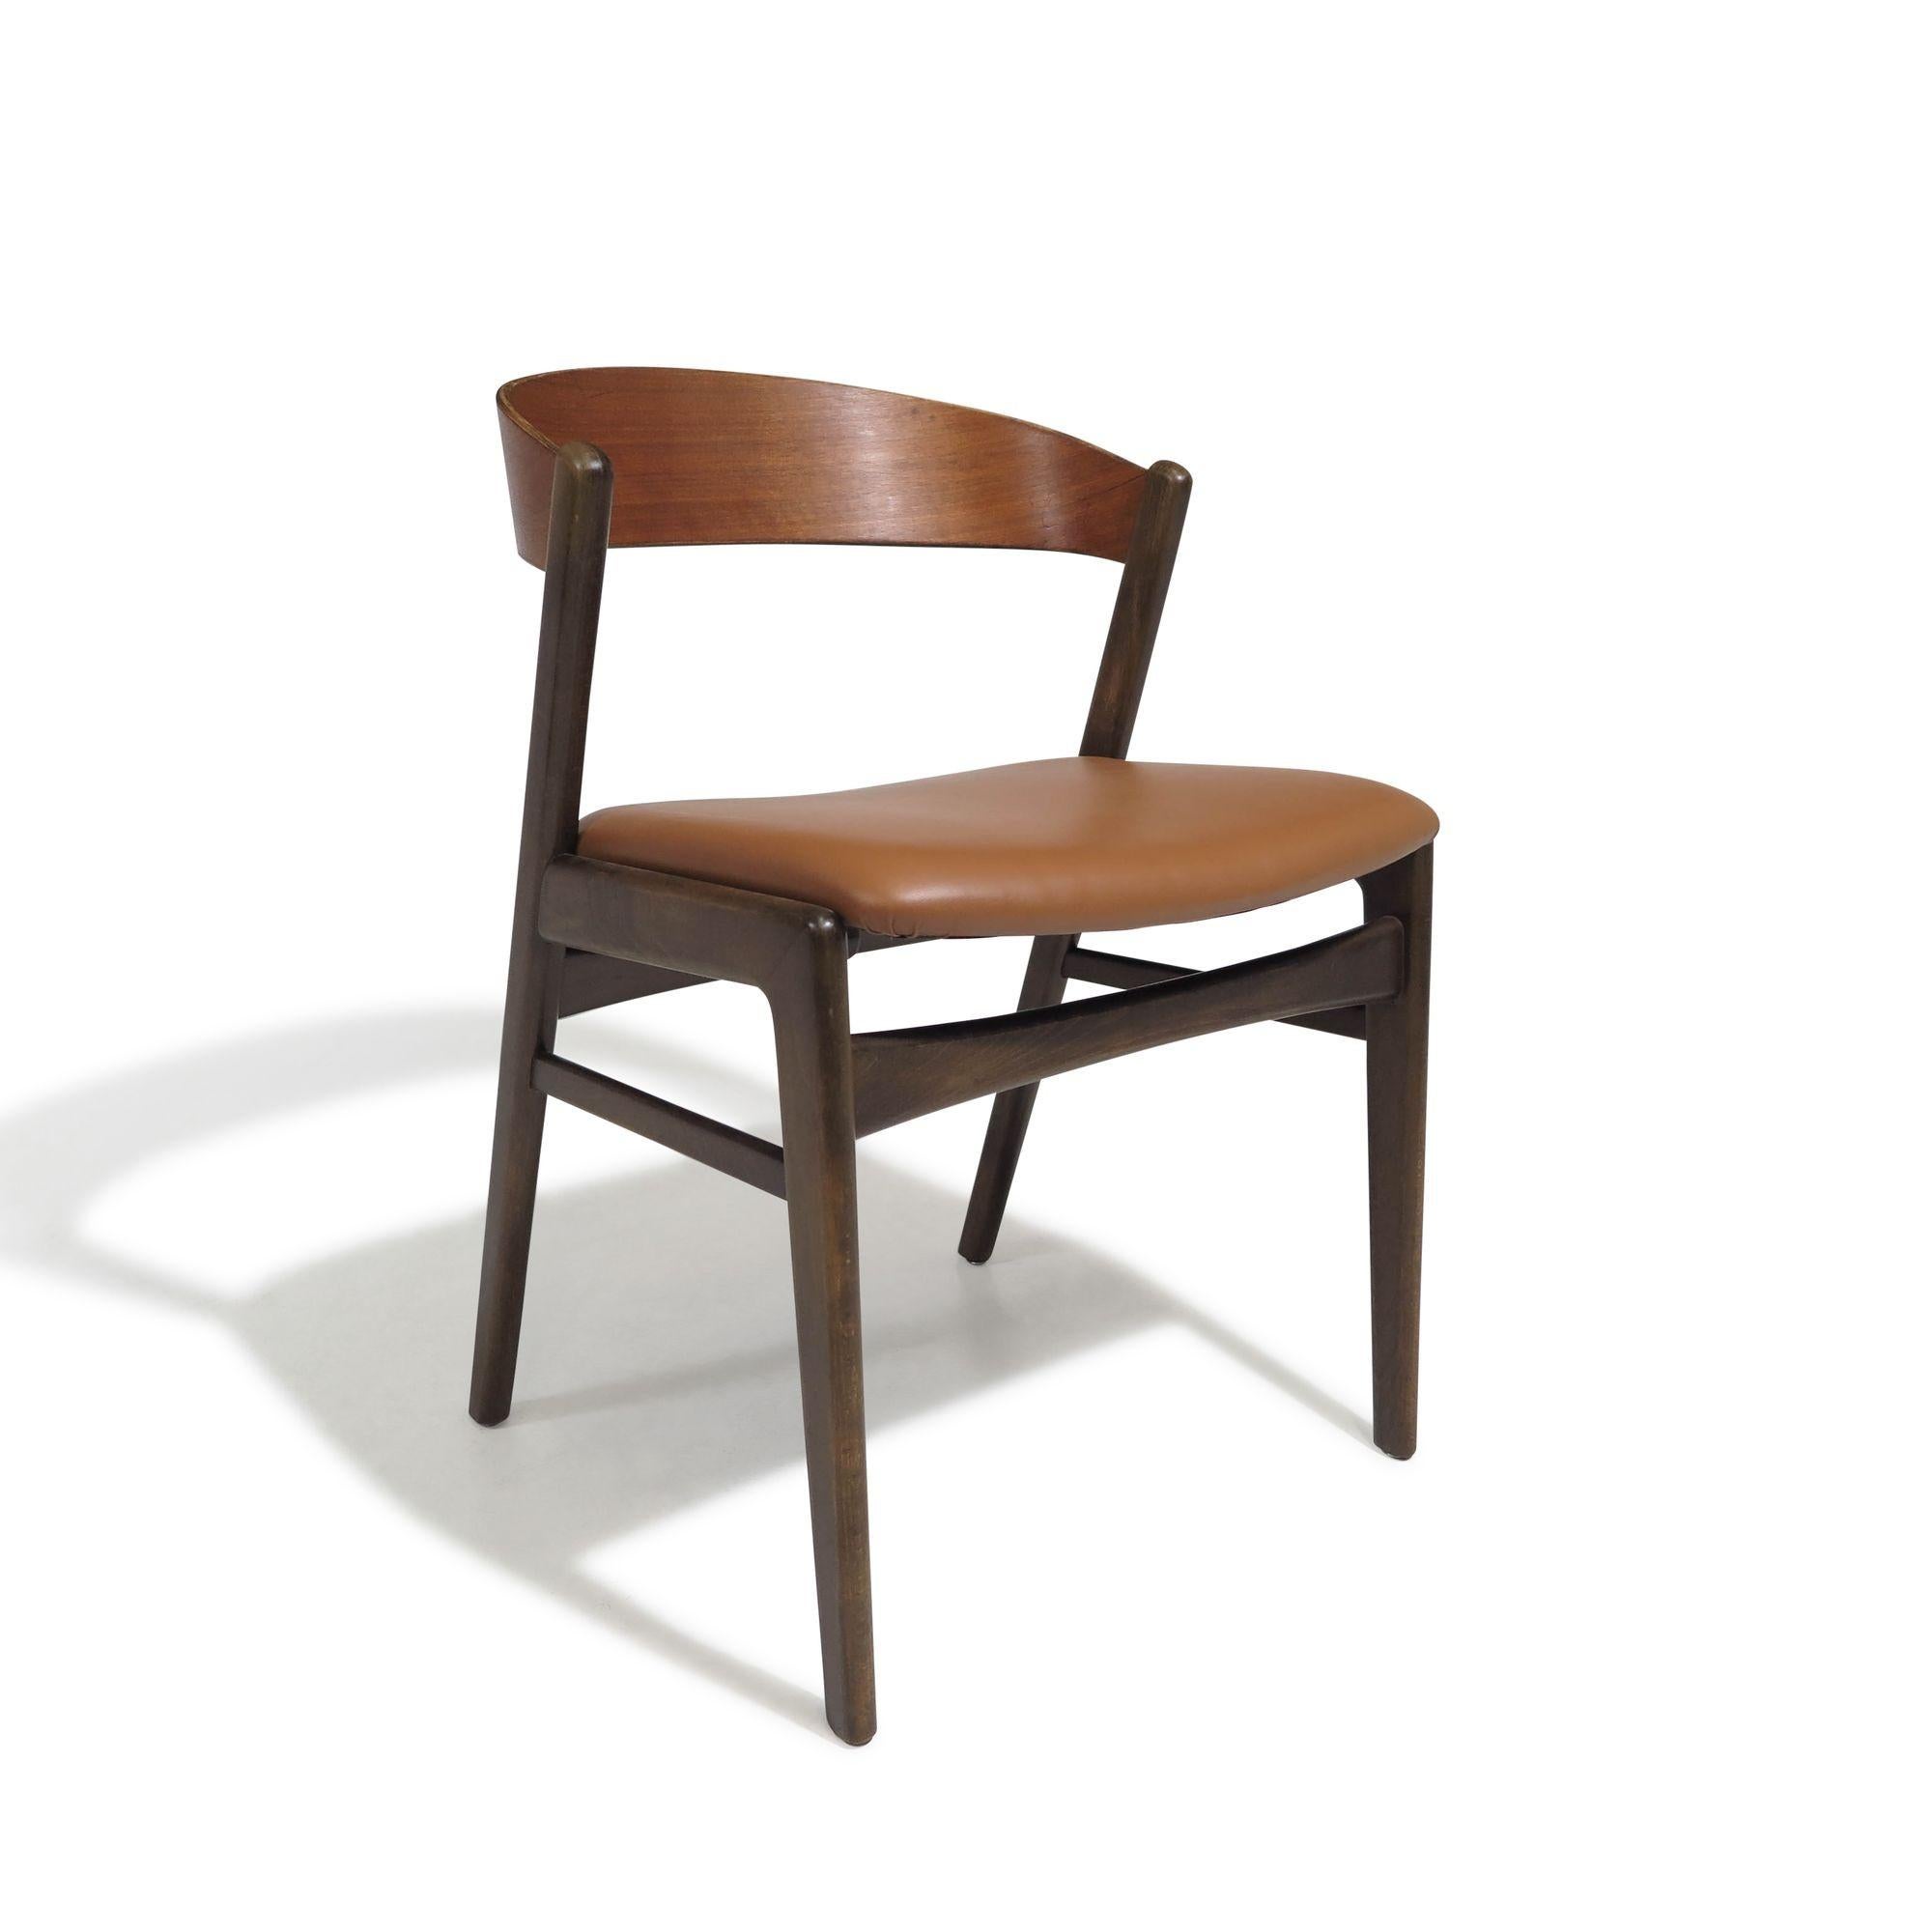 Ensemble de huit chaises de salle à manger danoises du milieu du siècle, conçues par Folke/One (1919-2002) pour Dux, 1965, Danemark. Les chaises sont fabriquées avec des dossiers incurvés en noyer et des piétements en hêtre teinté noyer. Sièges